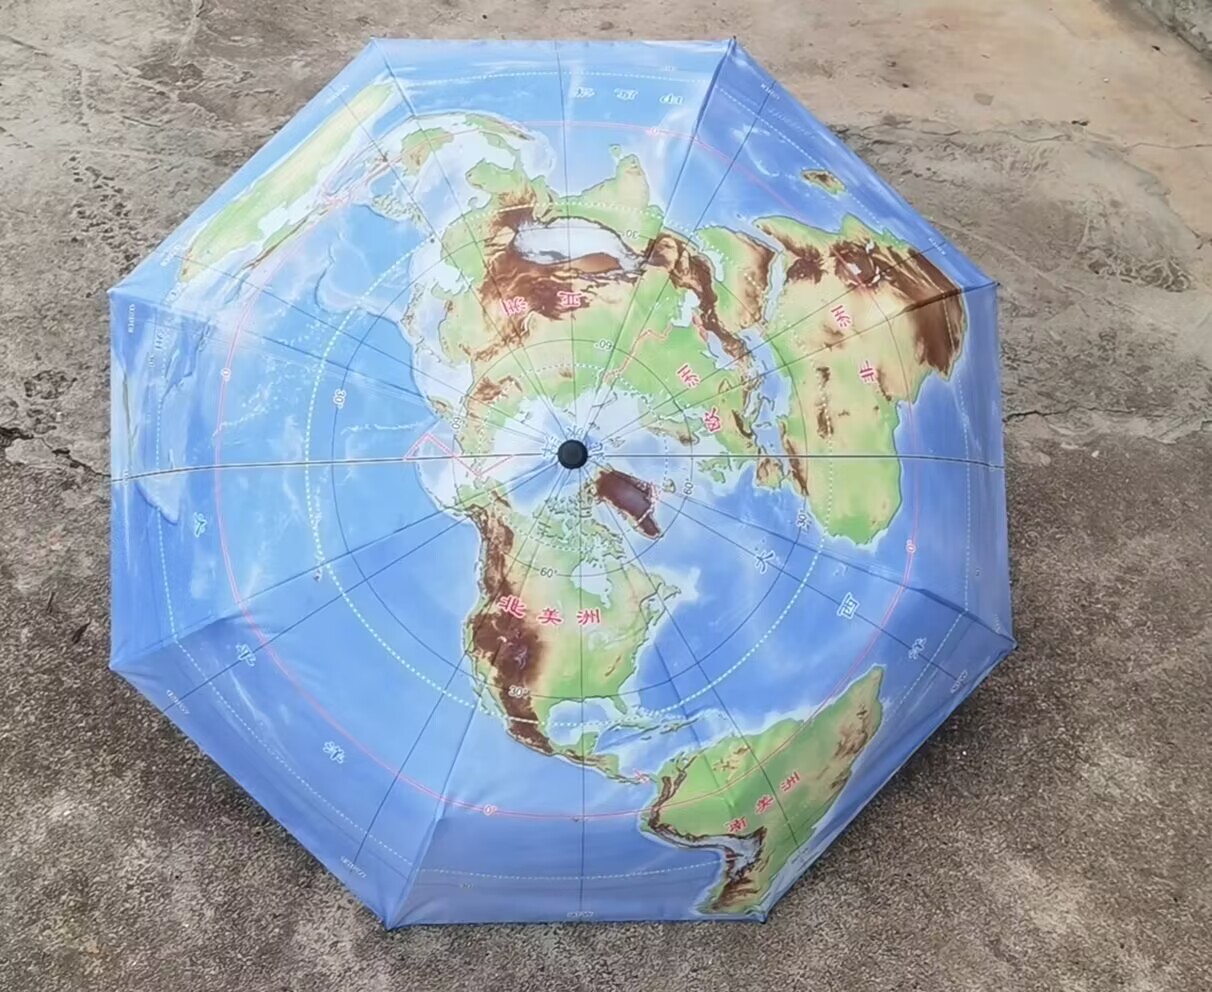 新款地图伞三折叠晴雨伞展示别致北极为中心50°S以北海陆雨季